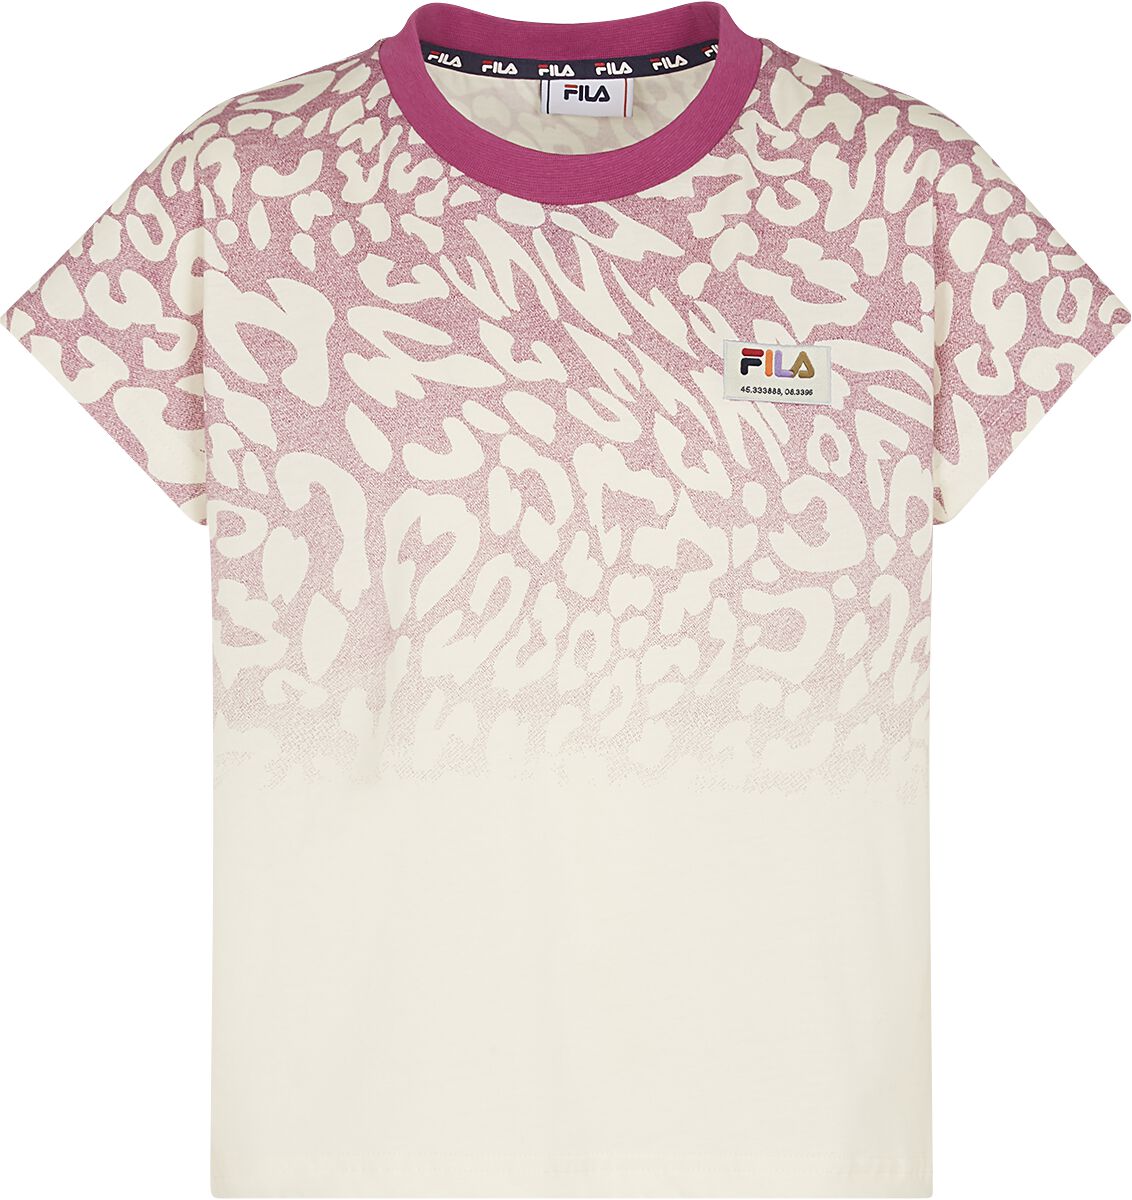 T-shirt de Fila - T-SHIRT BEVERSTEDT - 134/140 à 170/176 - pour filles - blanc/rose